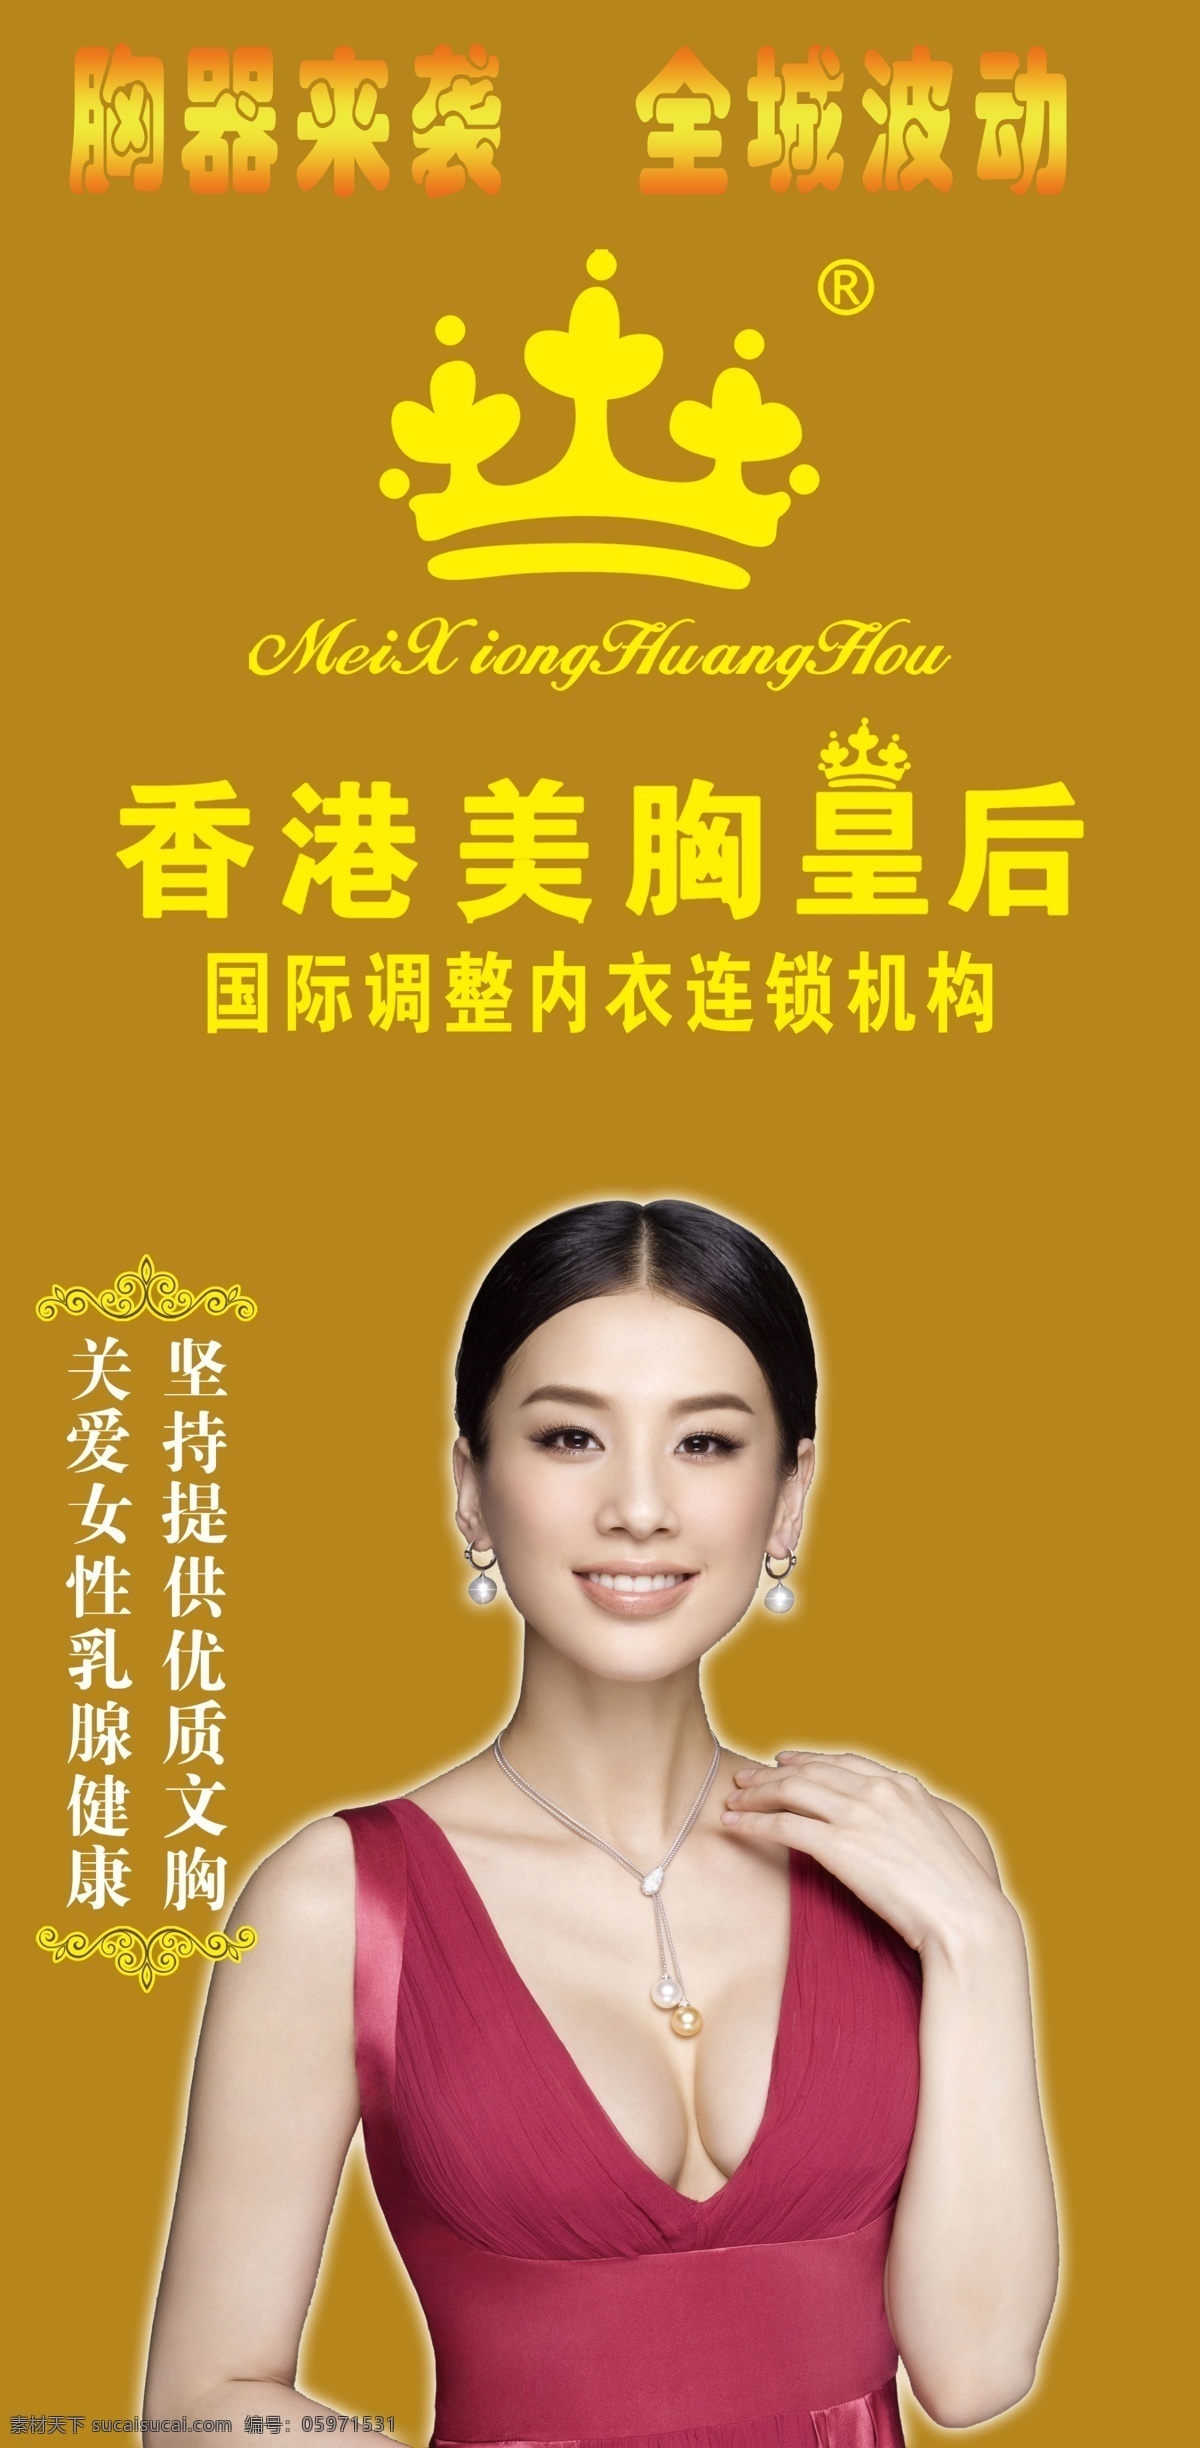 美胸皇后 香港 美女 海报 胸 logo 立体字 皇冠